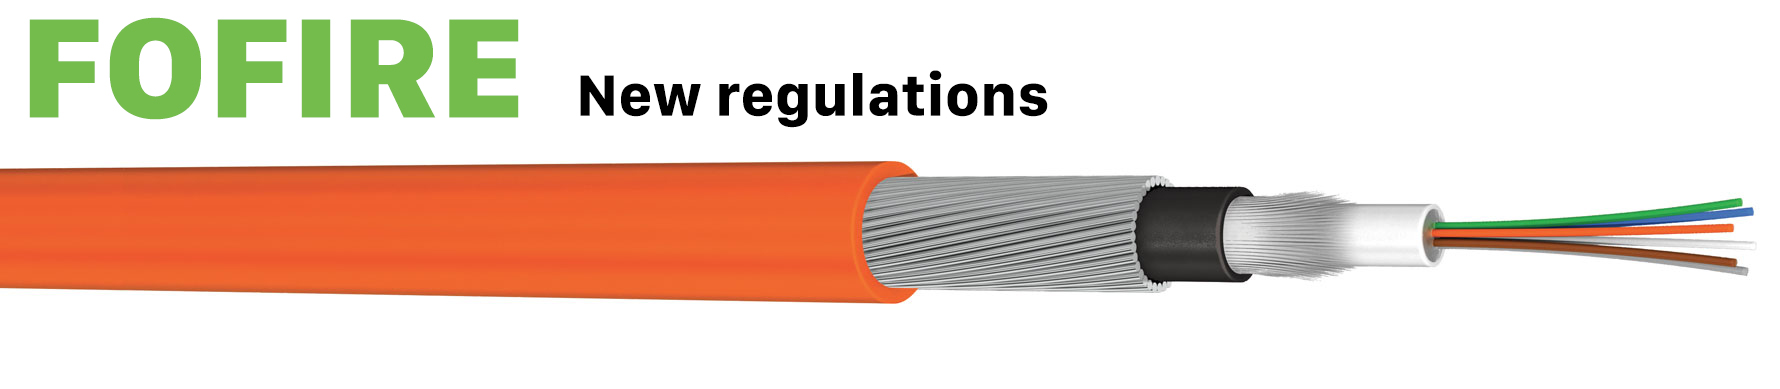 FOFIRE, new regulations